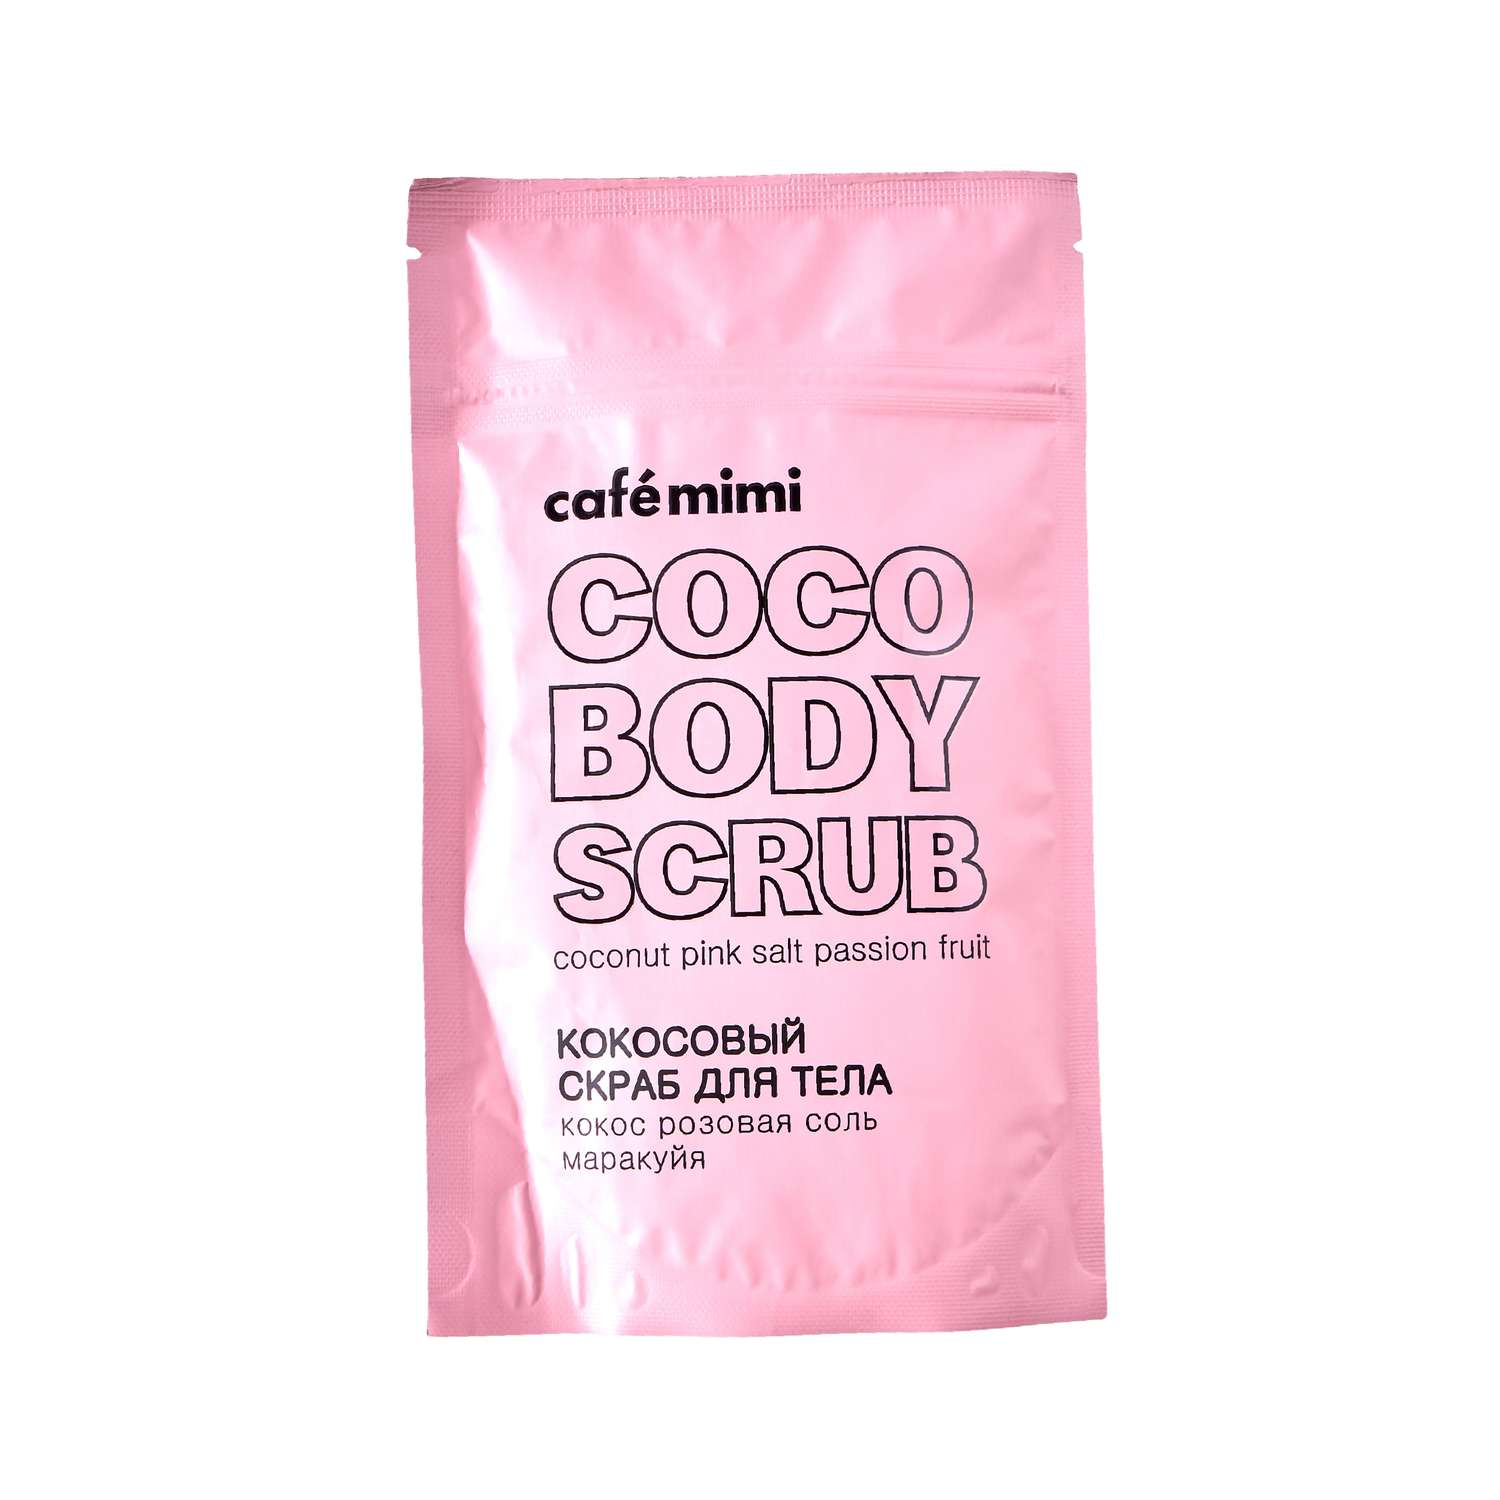 Кокосовый скраб для тела cafe mimi кокос розовая соль 150 мл - фото 1